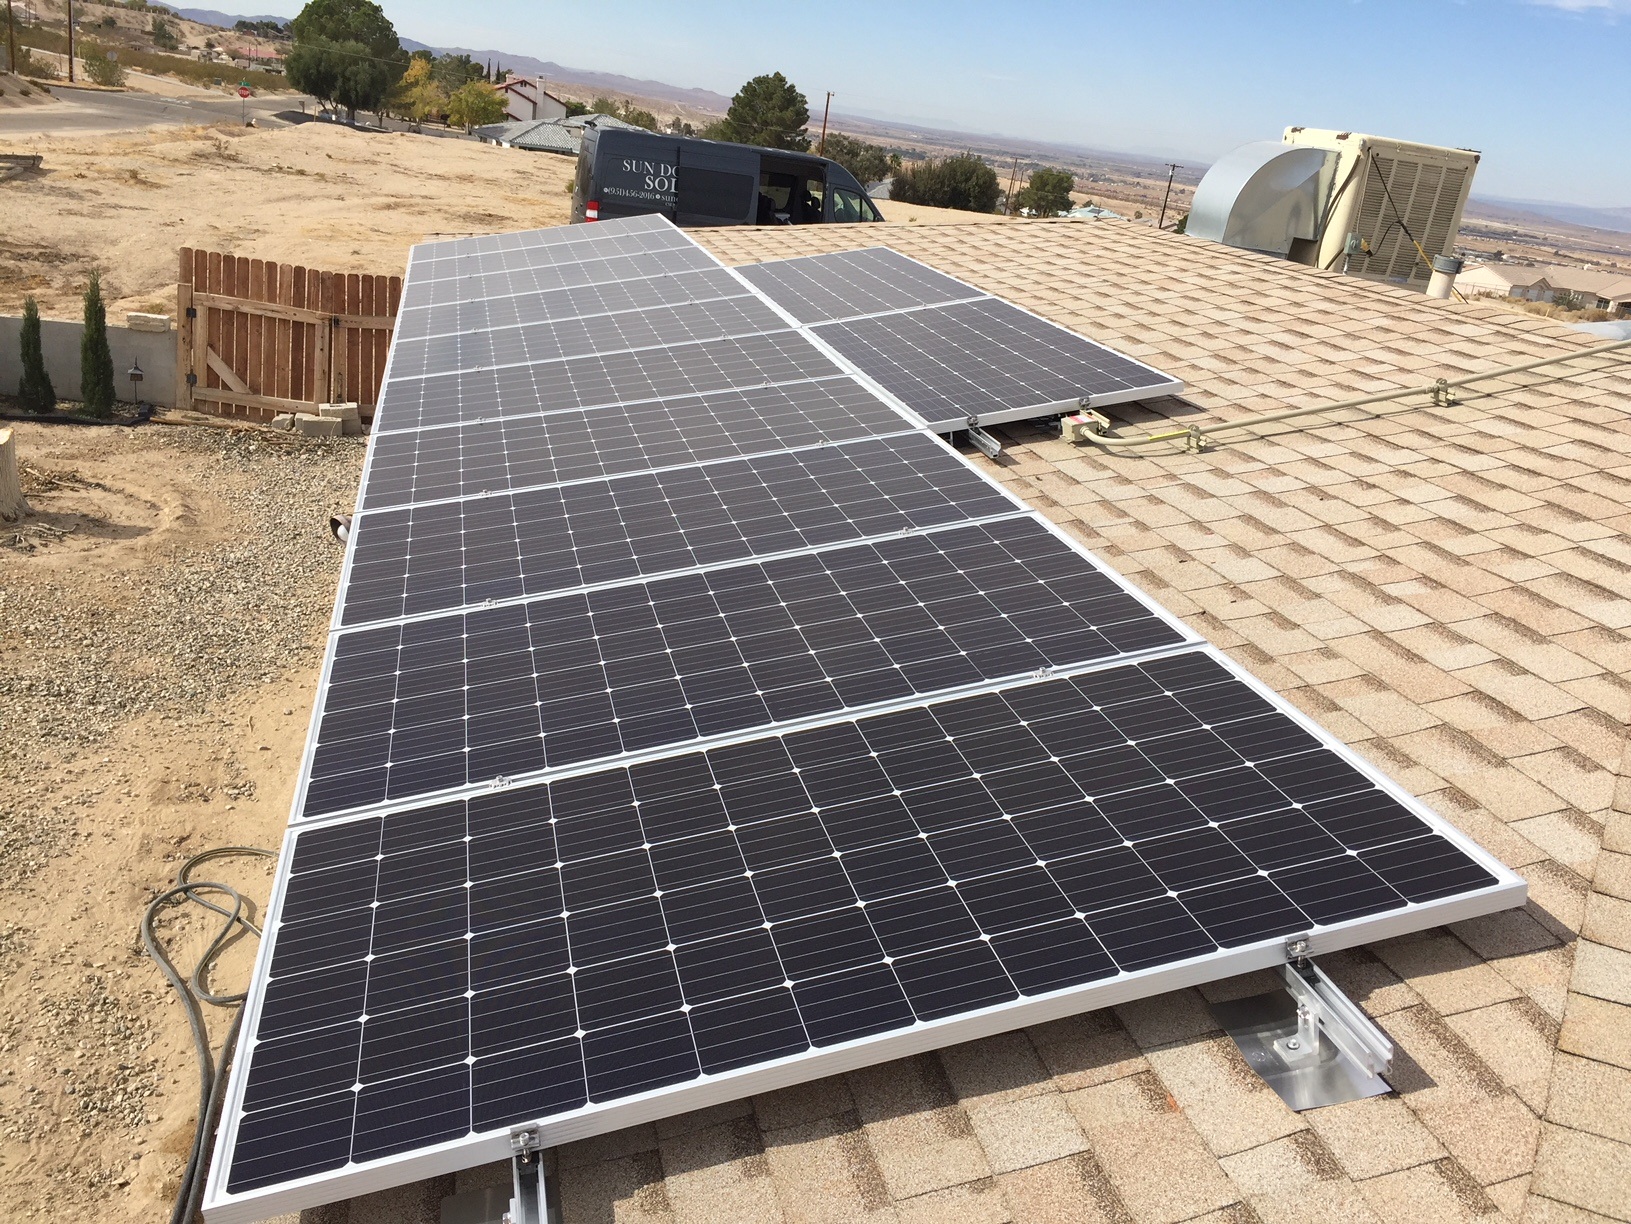 solar energy equipment supplier